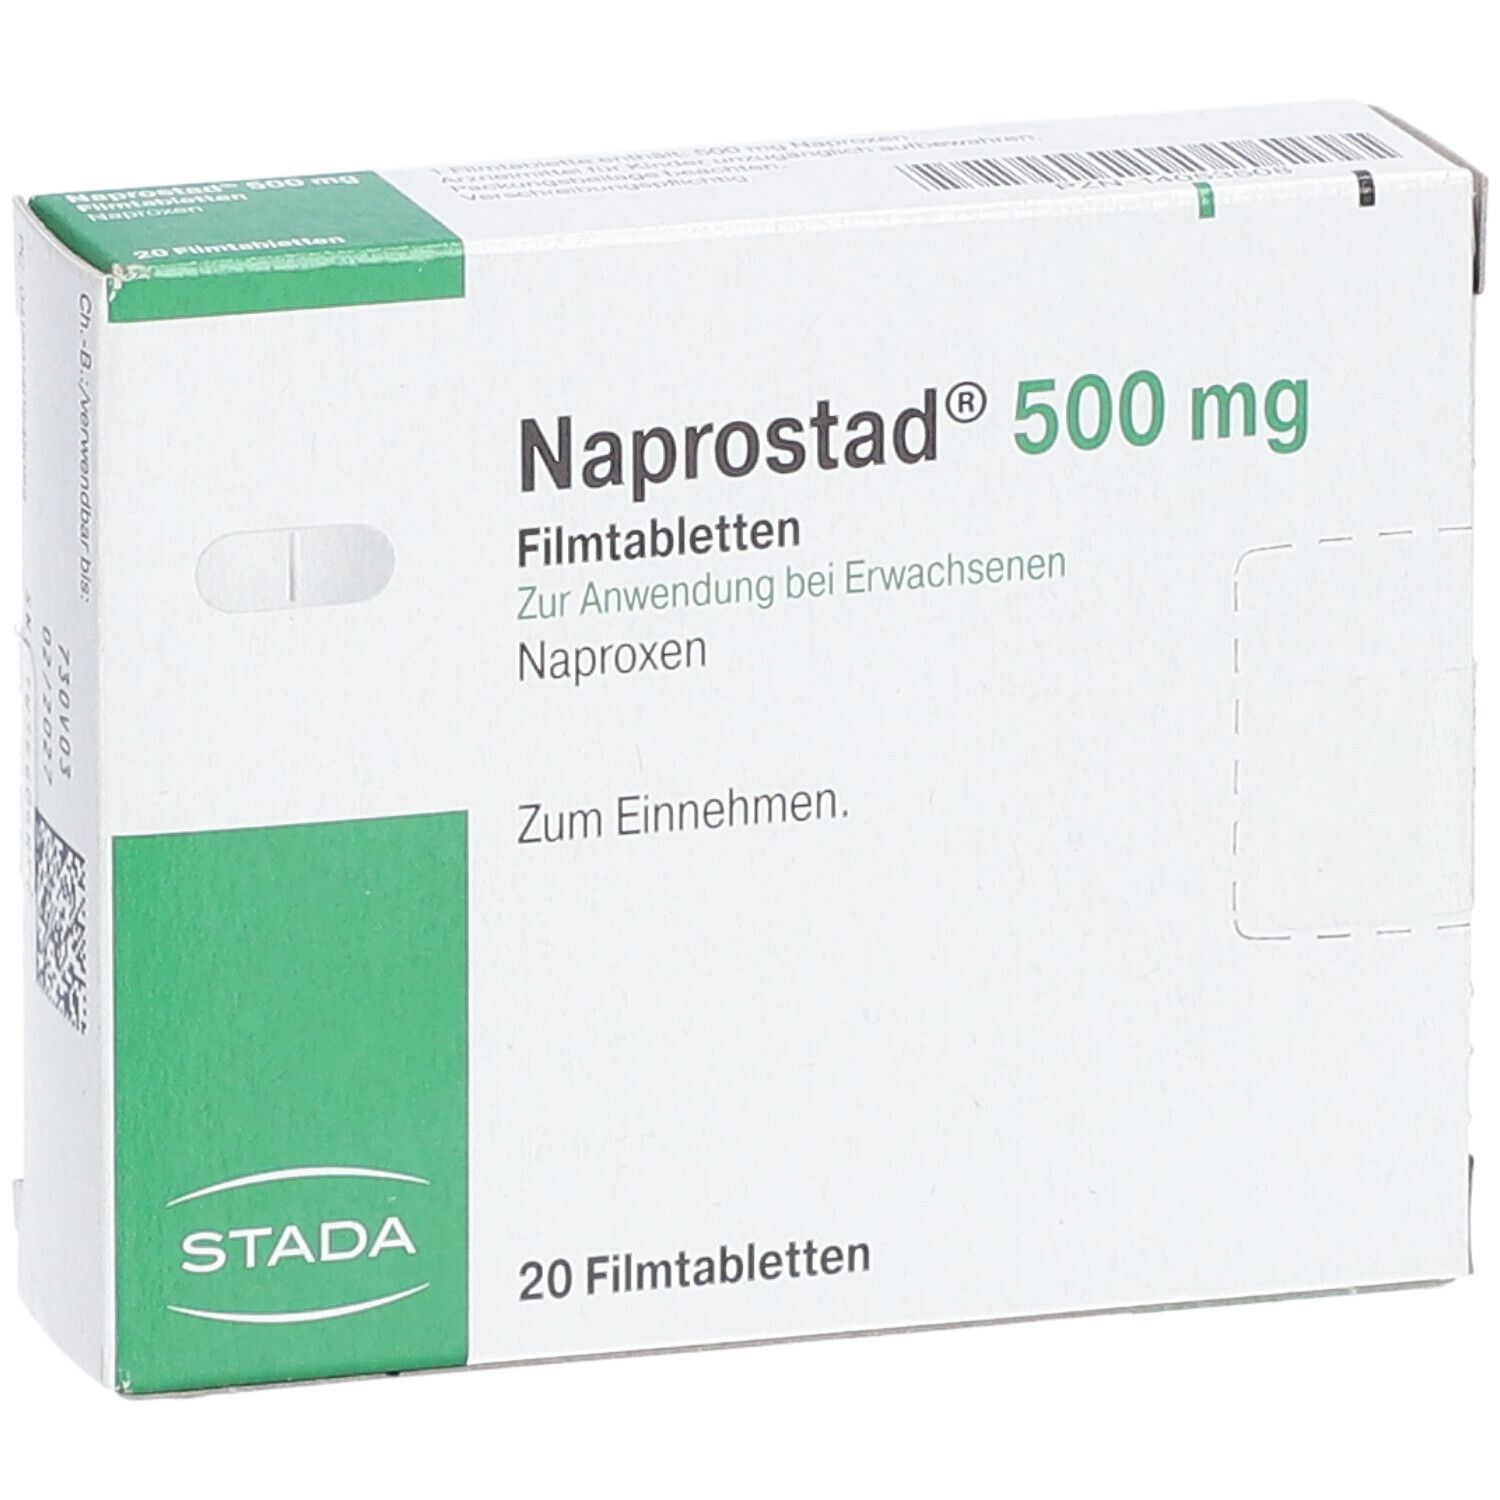 Naprostad® 500 mg